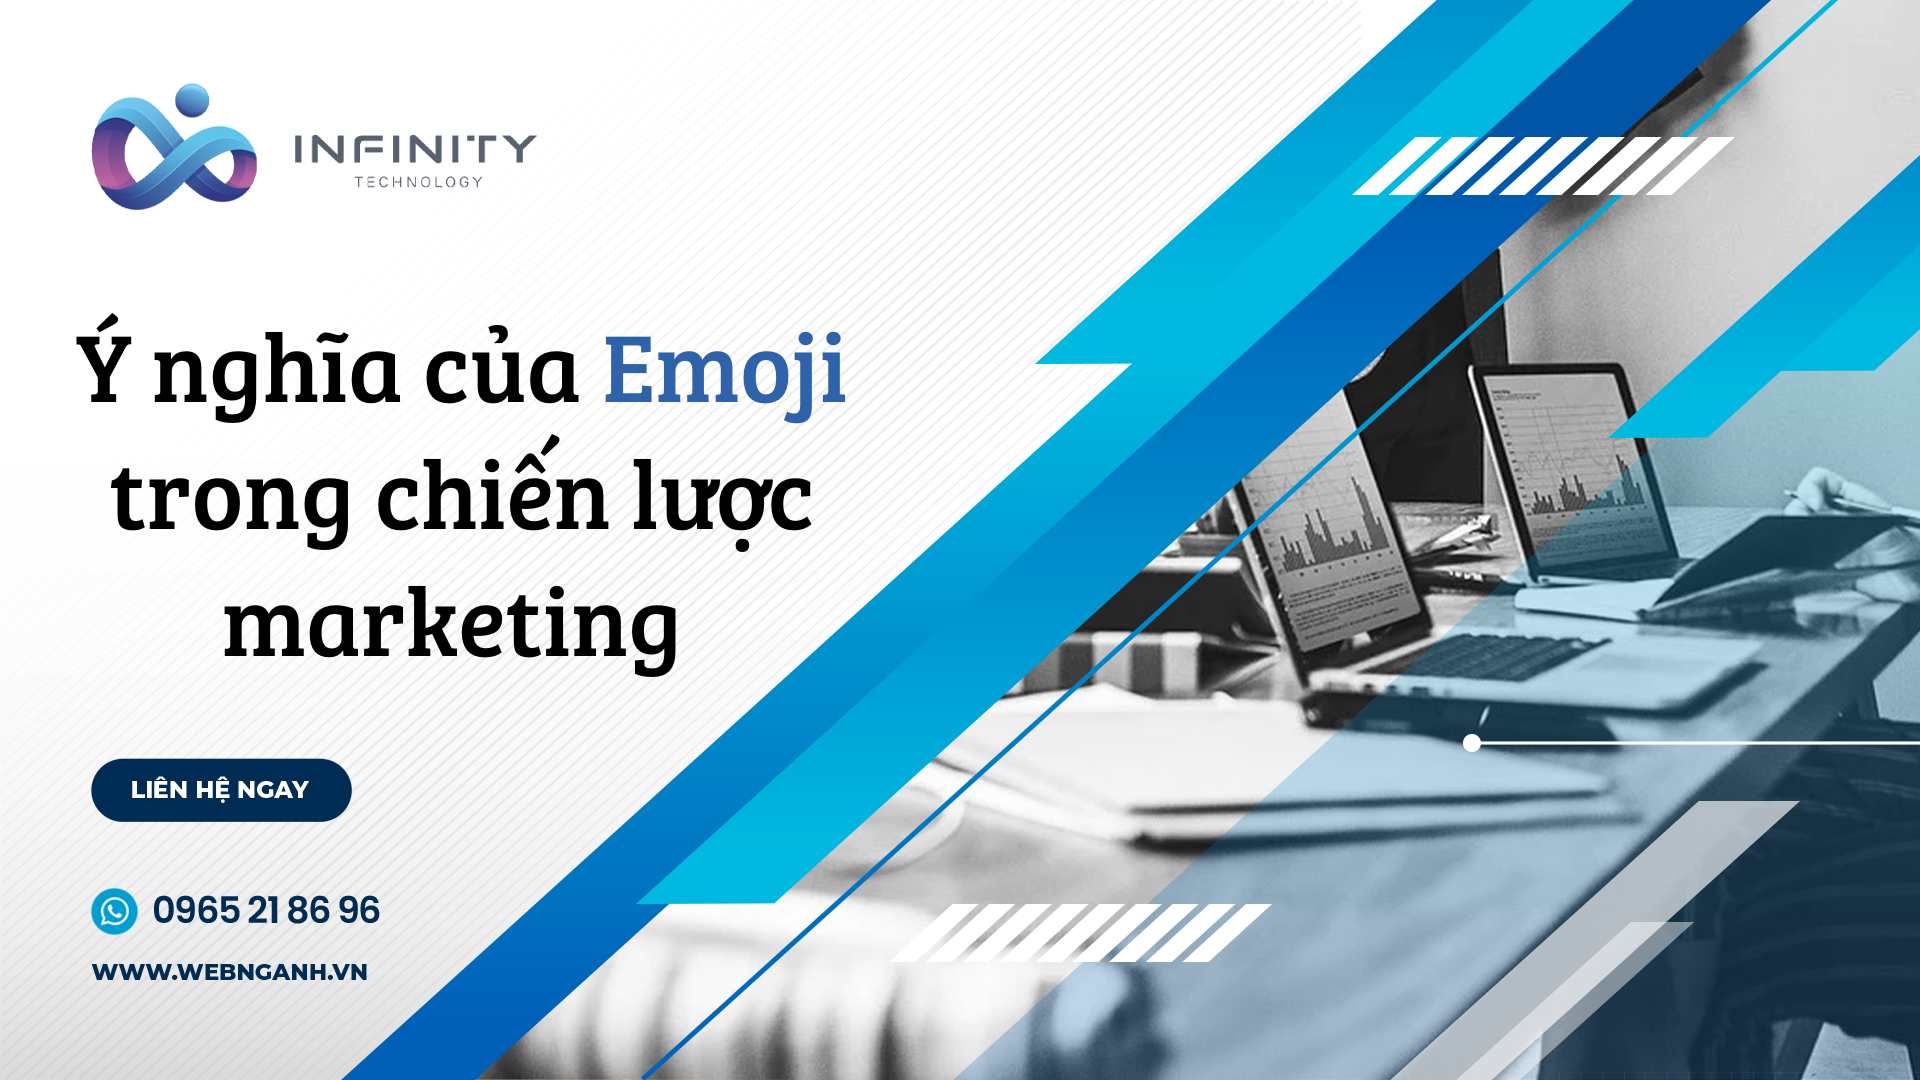 Ý nghĩa của Emoji trong chiến lược marketing